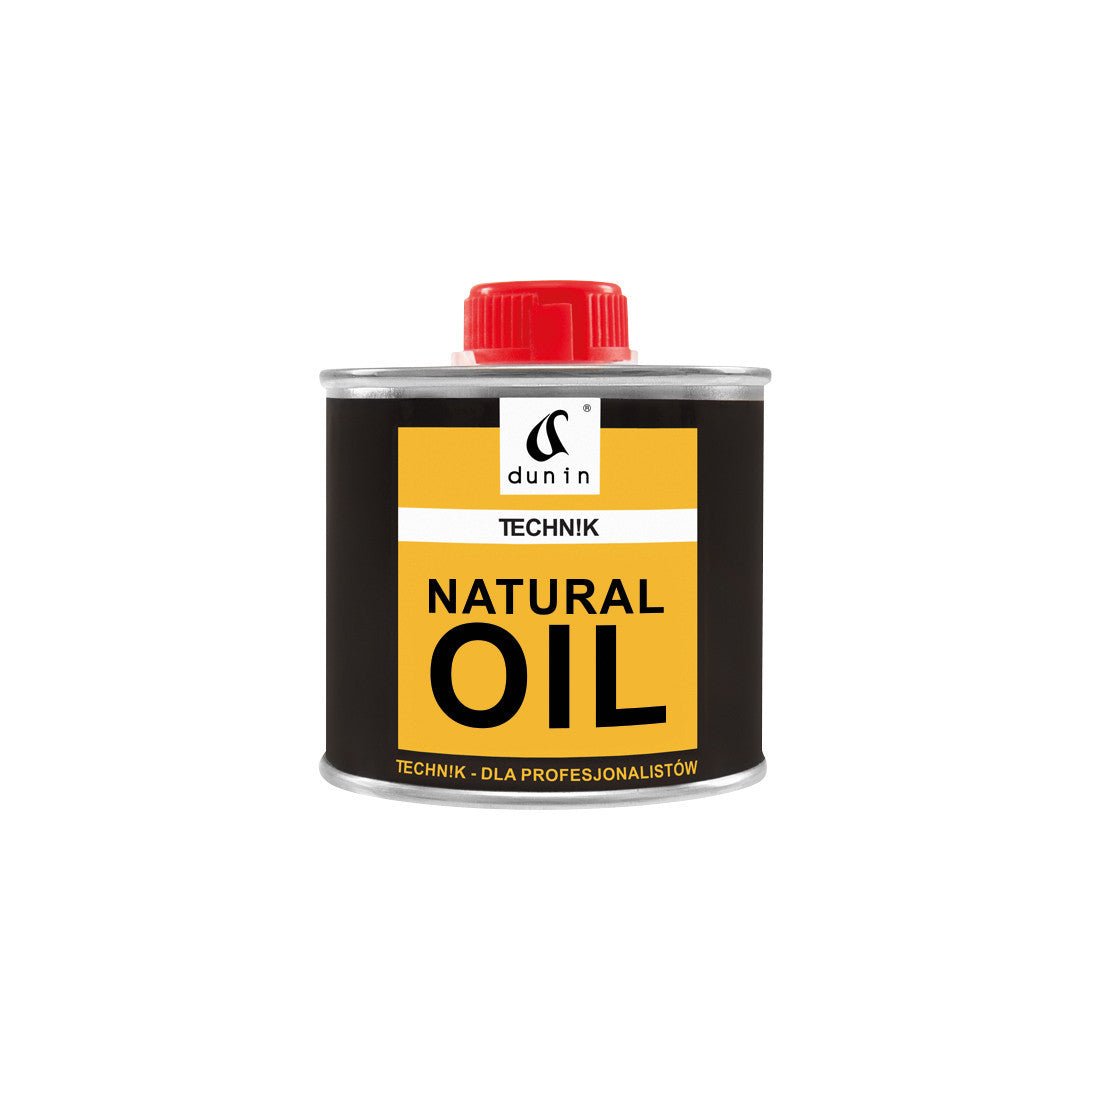 Dunin Technik Natural Oil 500ml